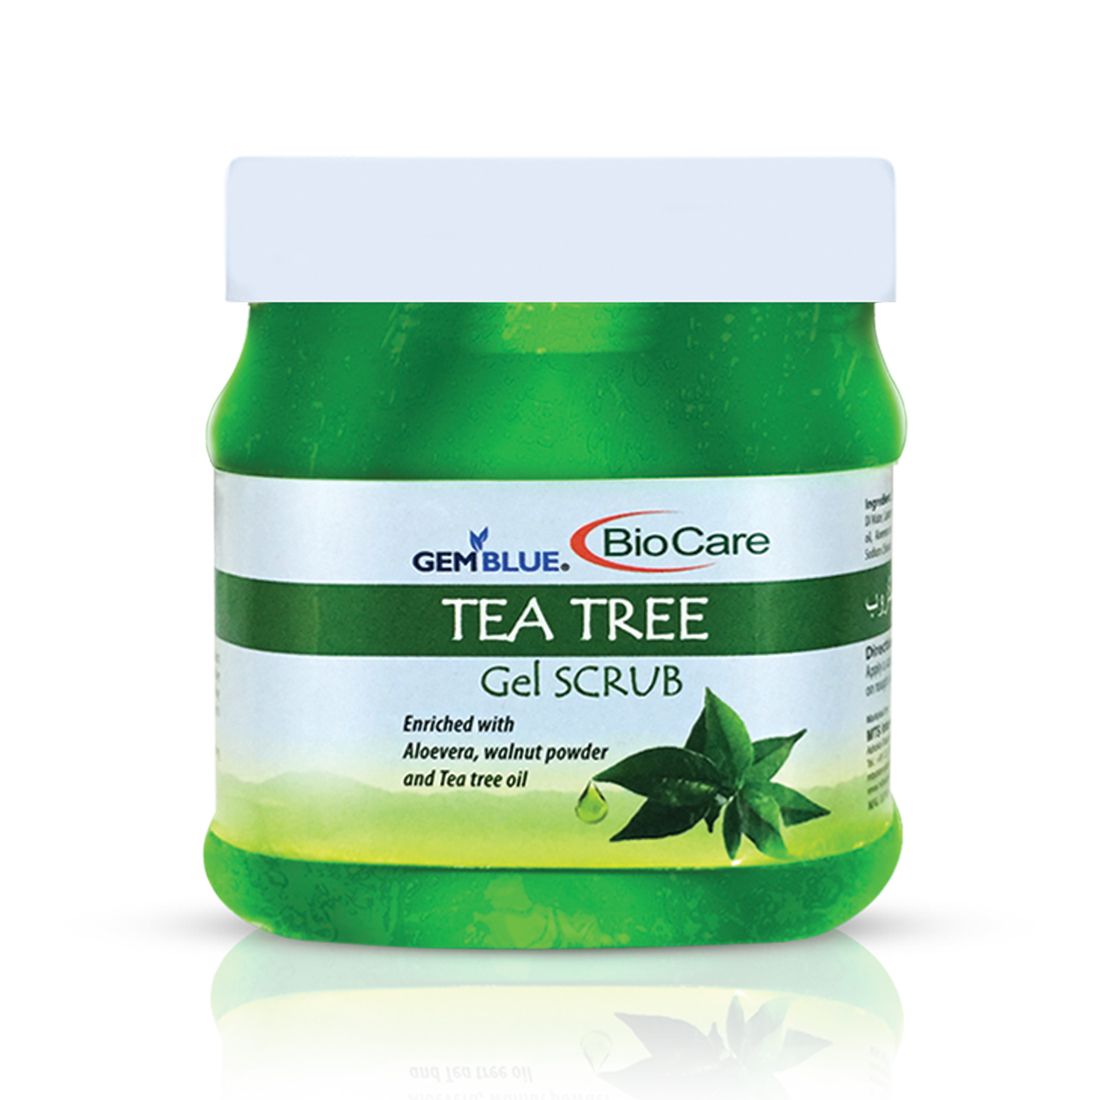     			gemblue biocare Tea Tree Facial Scrub 500 ml